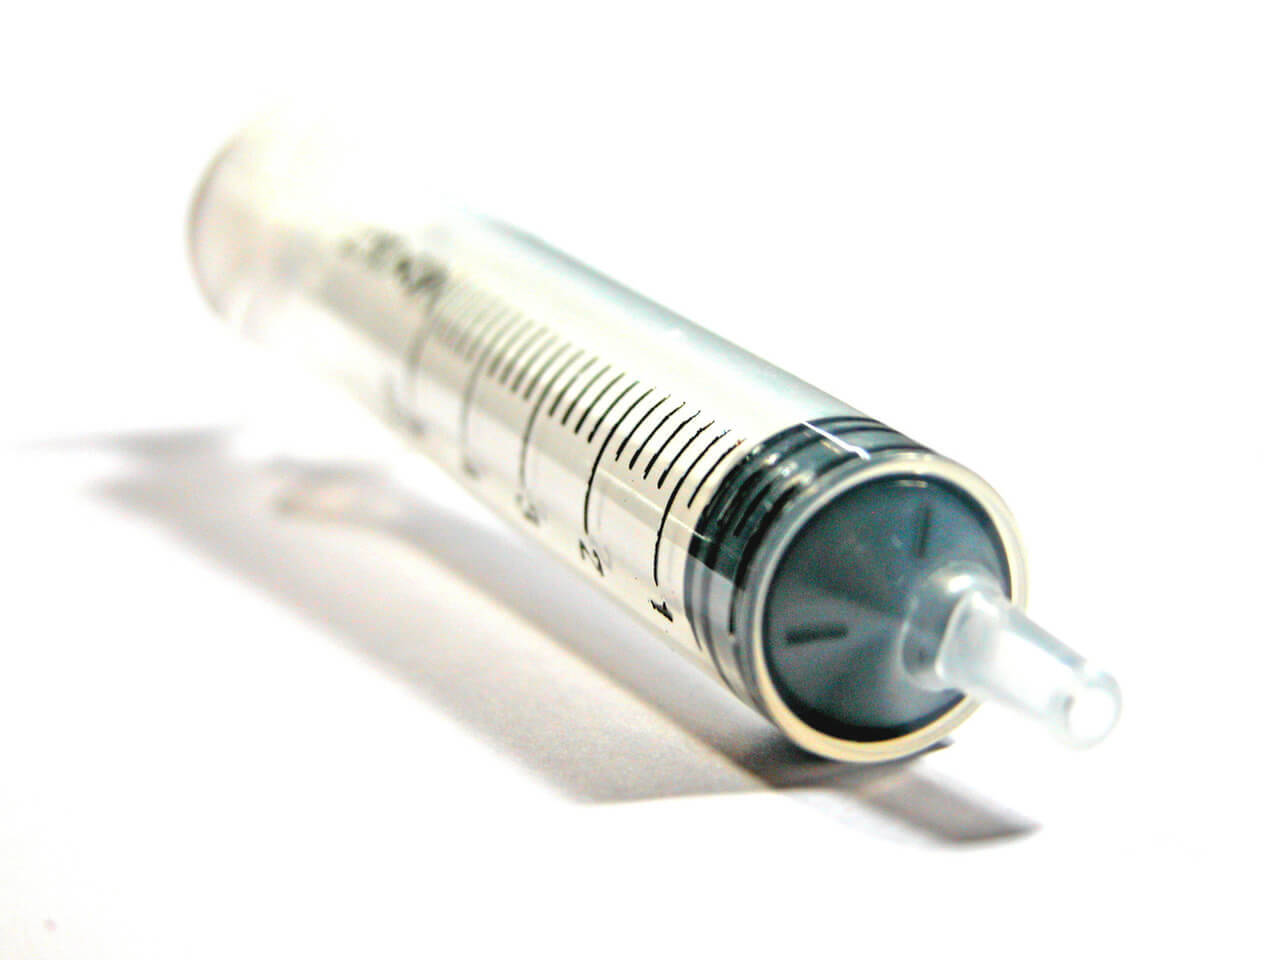 syringe-1568848-1280x960